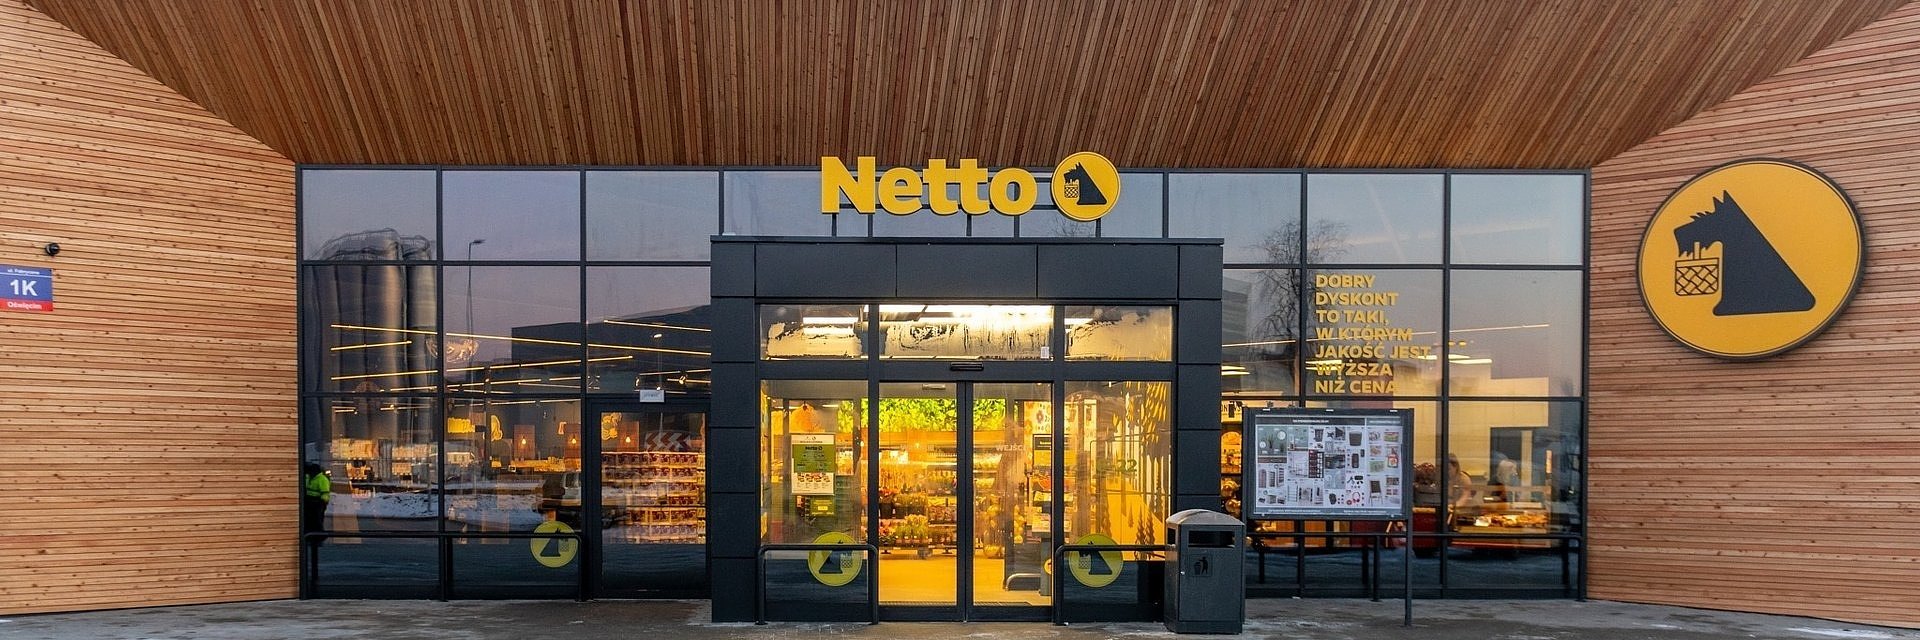 Kolejny etap konwersji sklepów Tesco na Netto